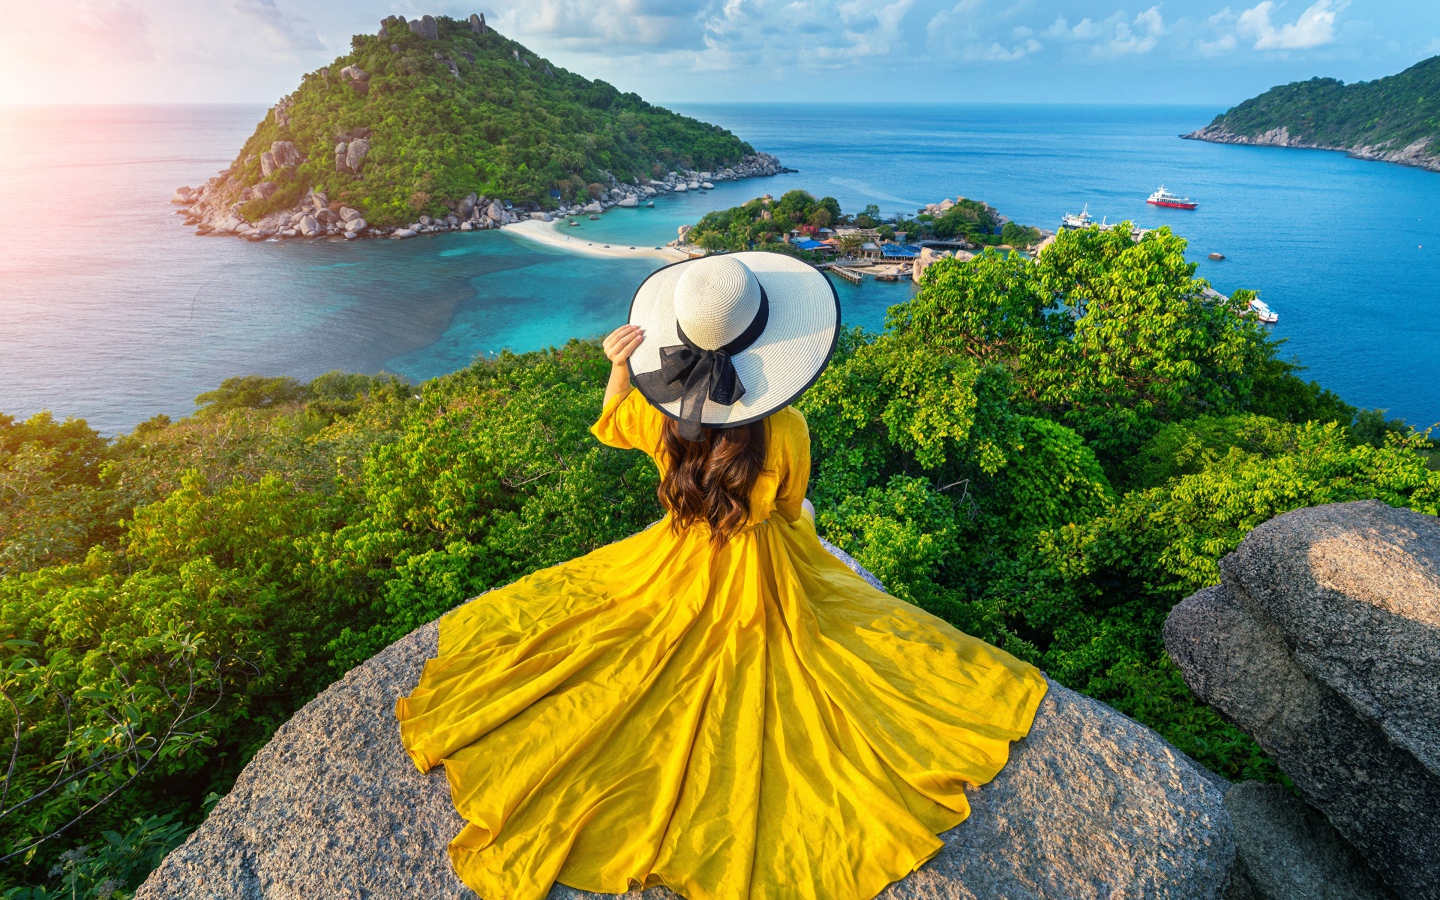 Девушка в красивом желтом платье сидит на камне с видом на море